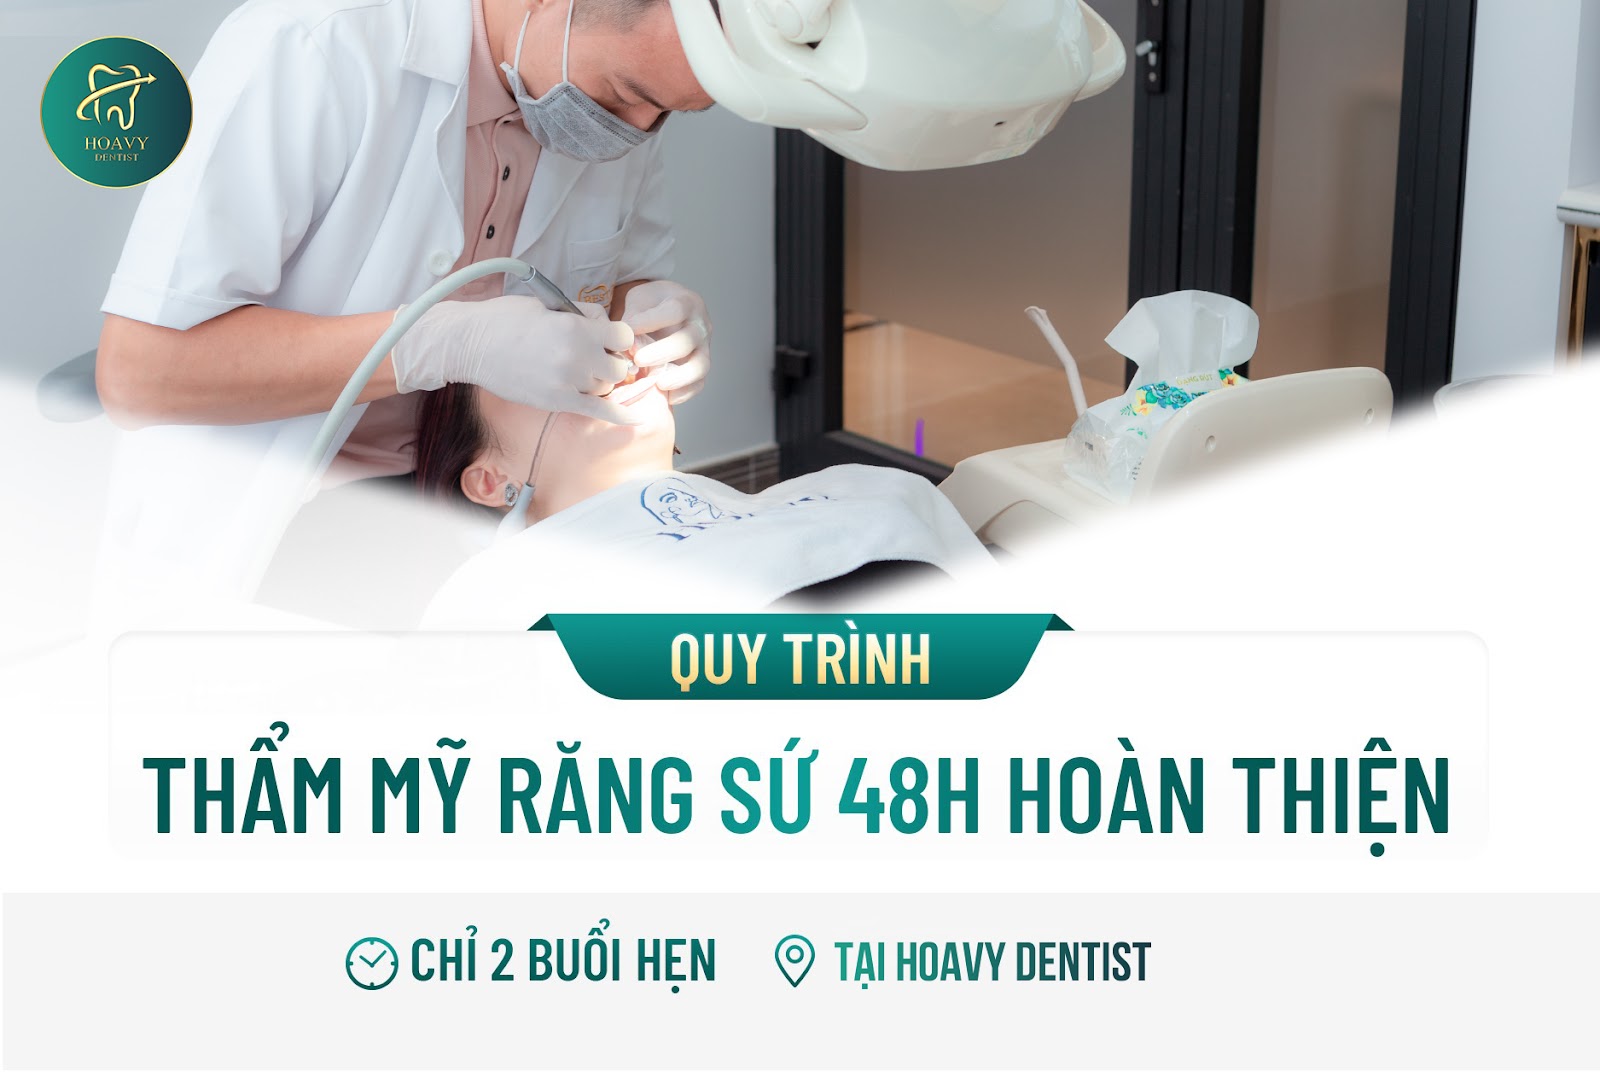 Hoavy Dentist là địa chỉ mài răng bọc sứ và làm thẩm mỹ răng sứ uy tín hàng đầu ở Hài Phòng